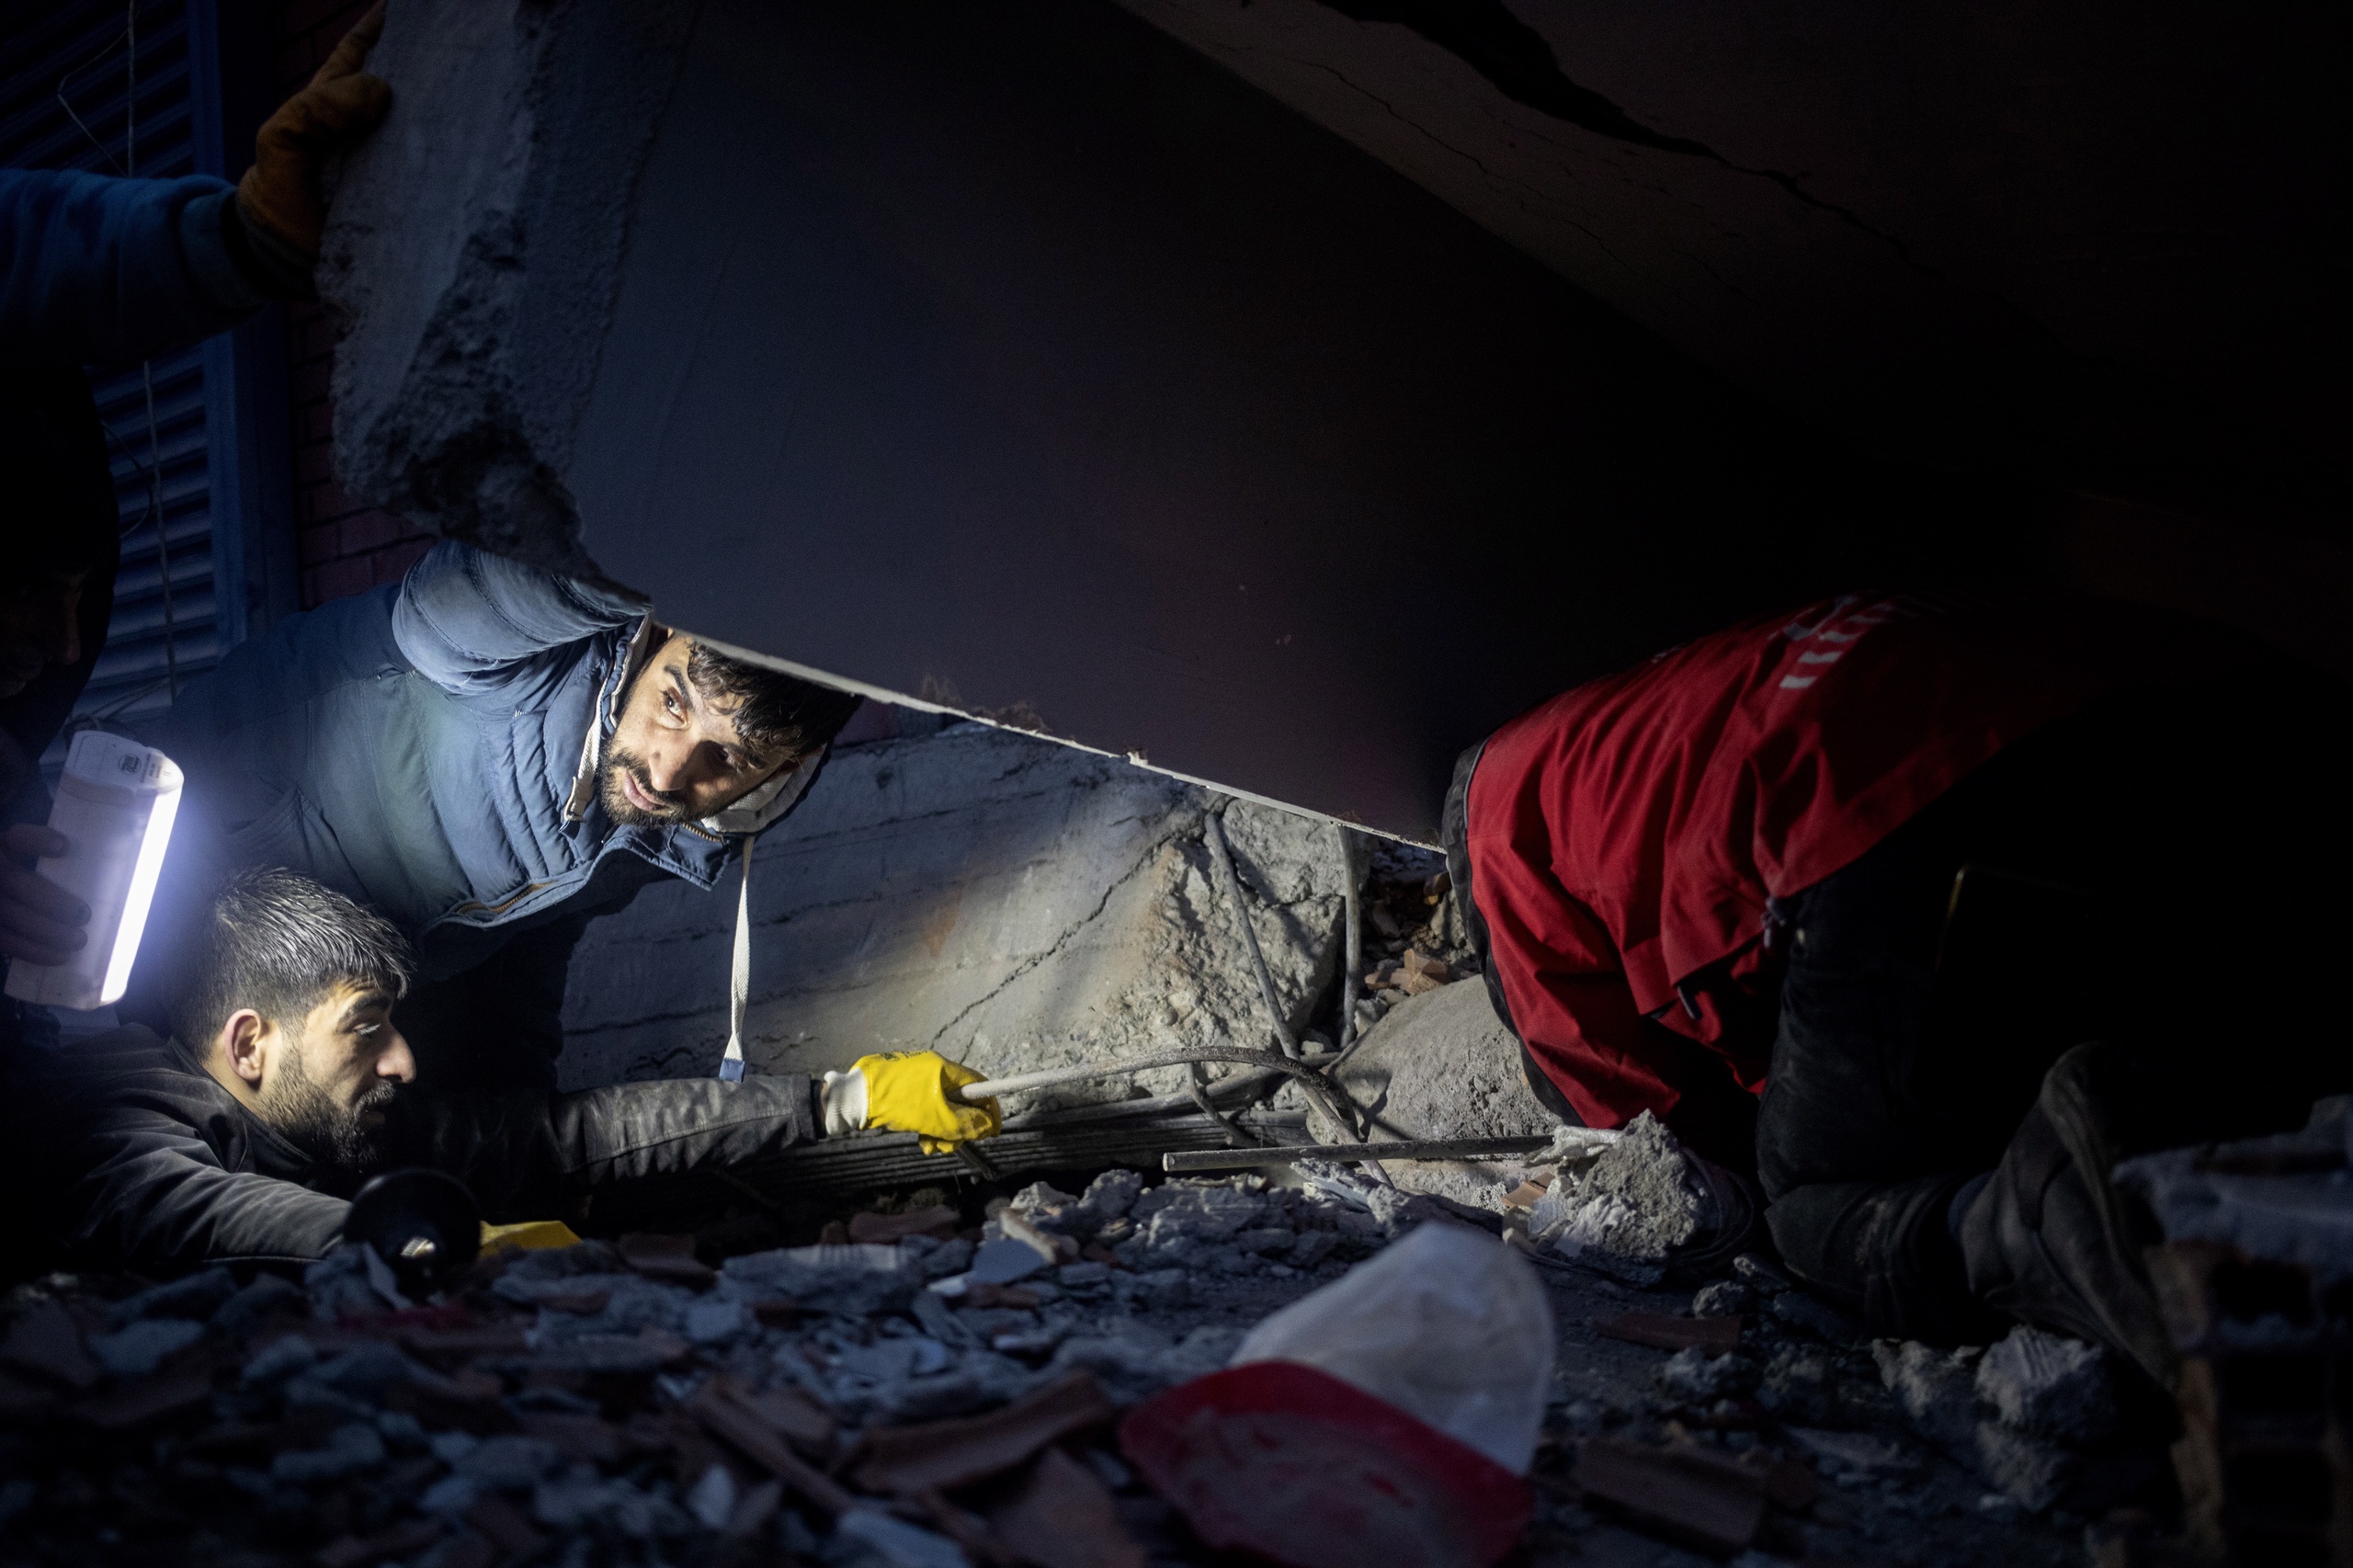 De zware aardbeving in Turkije en Syrië kan aan mogelijk tienduizenden mensen het leven hebben gekost. Dat verwacht Rob Govers, geofysicus verbonden aan de Universiteit Utrecht.